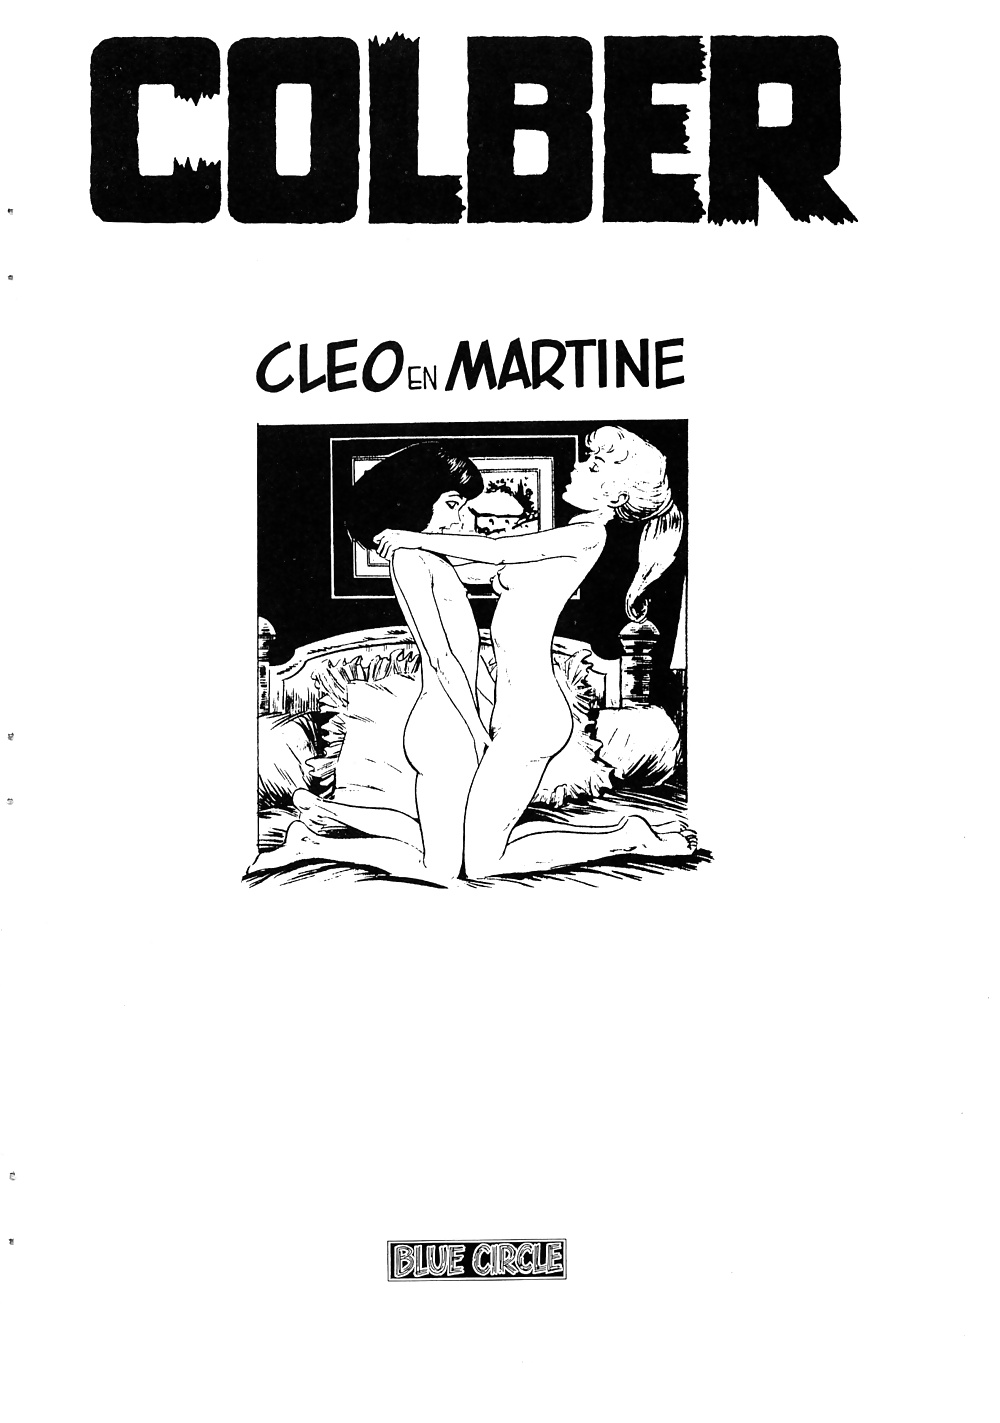 Weinlese-Comic - Cleo & Martine #41028737